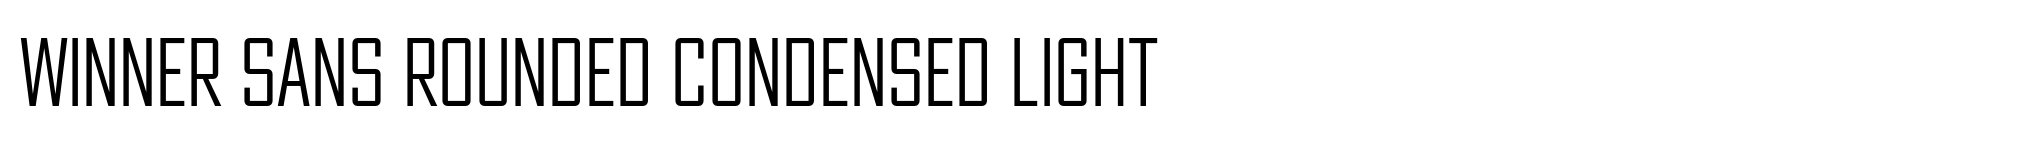 Winner Sans Rounded Condensed Light image